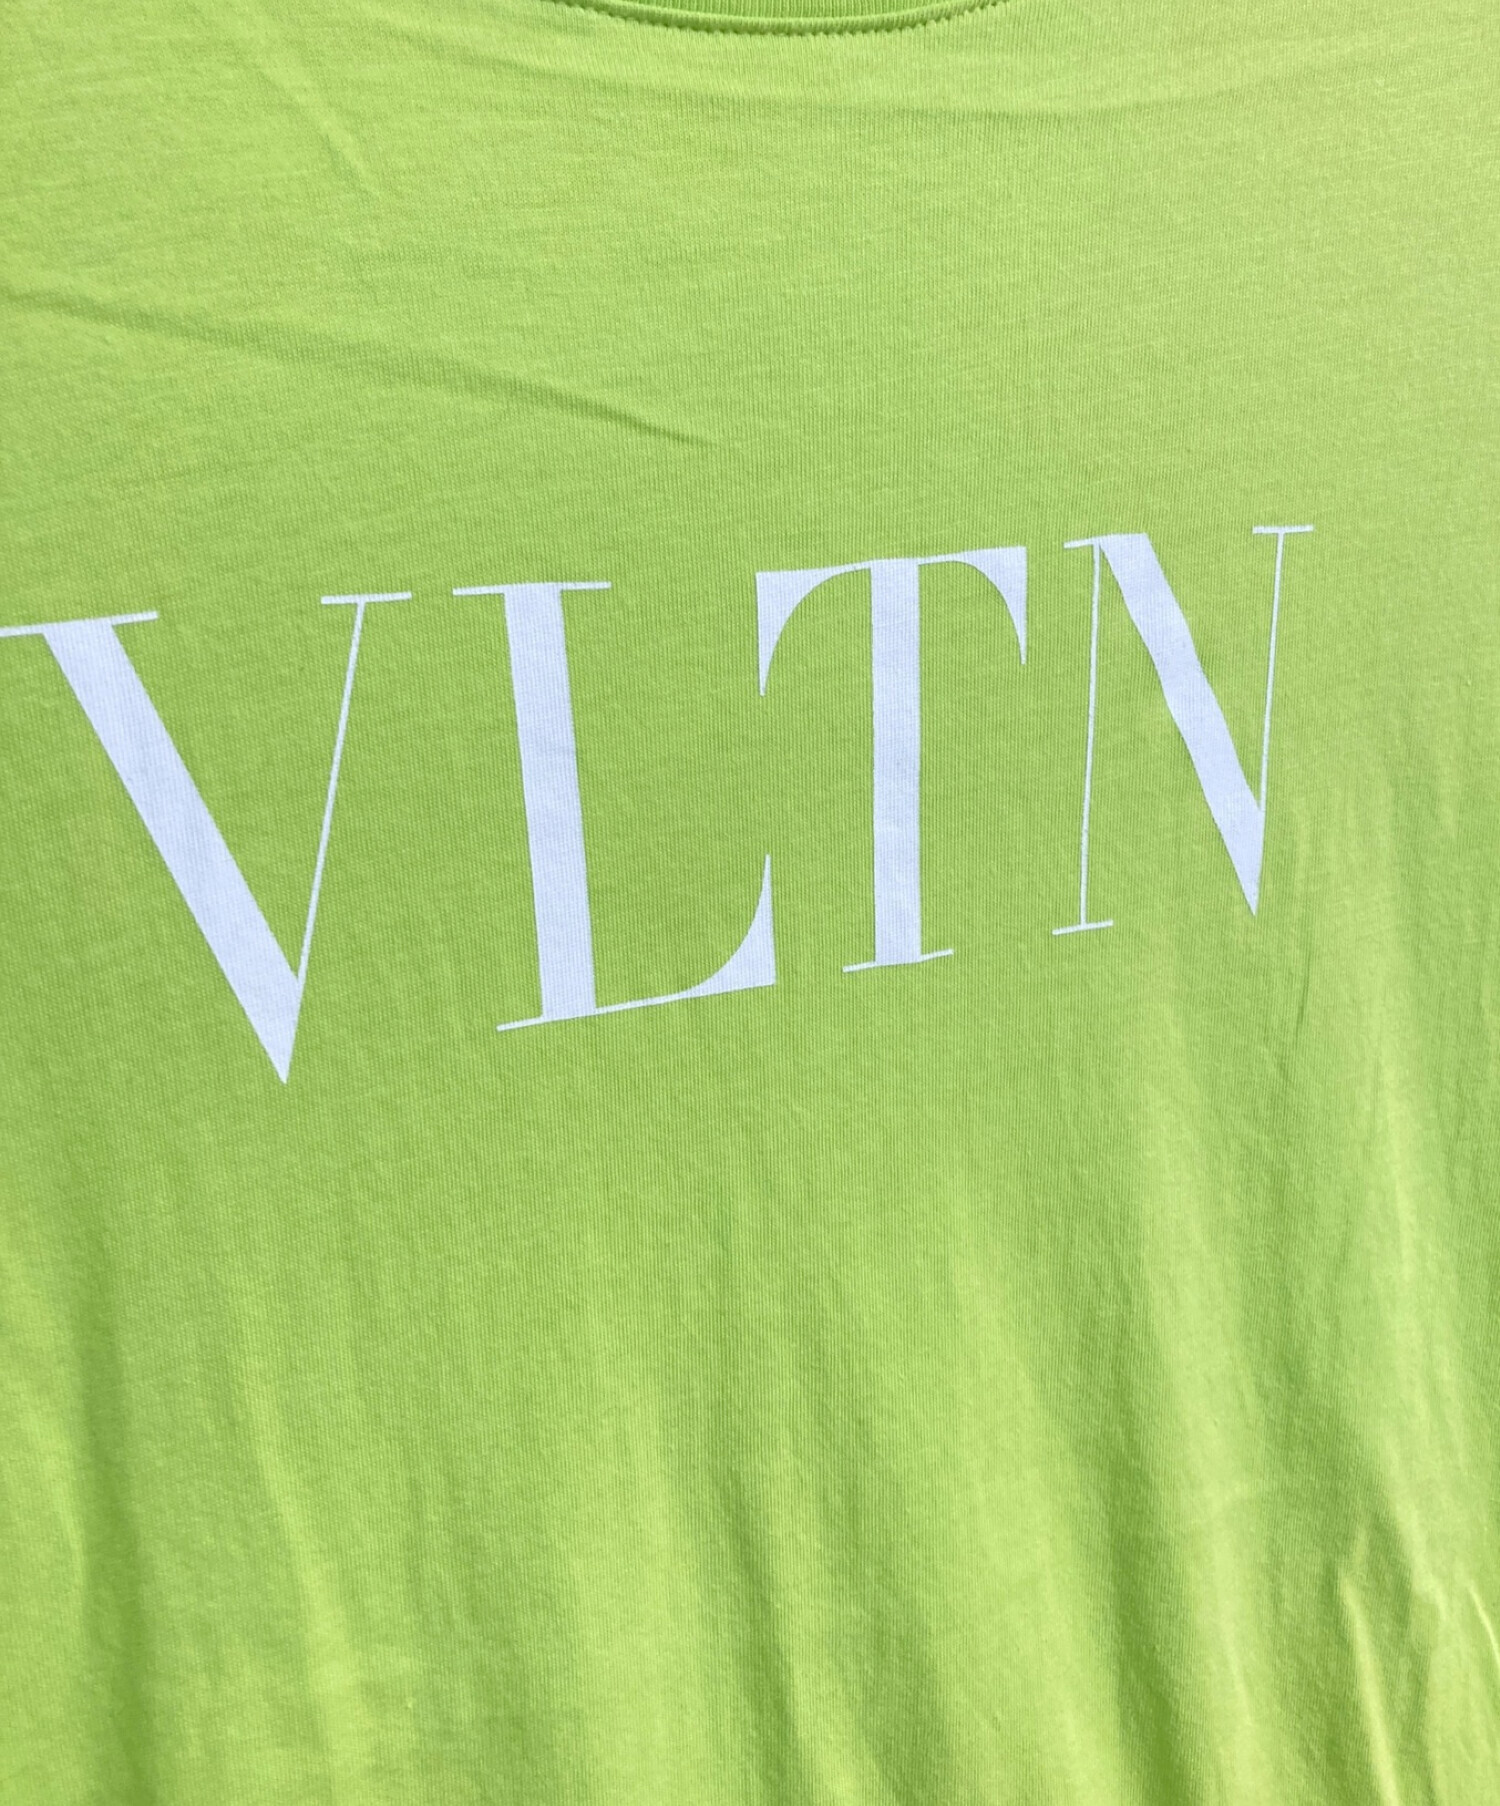 VLTN Tシャツ ロゴ サイズXXL